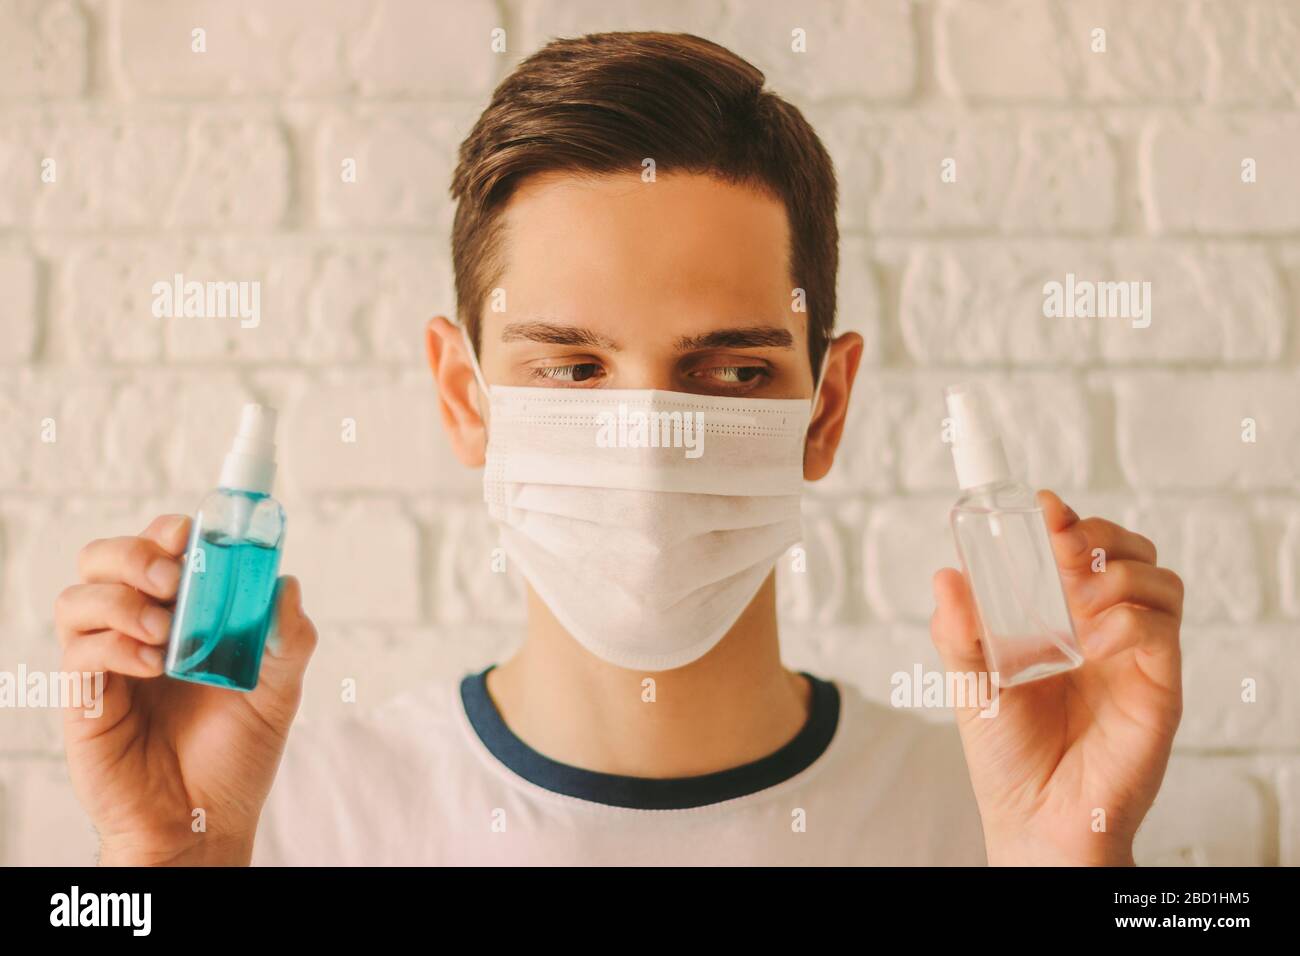 Médecin professionnel dans le masque de protection sur le visage tenir les bouteilles de désinfectant dans les mains. Le jeune homme dans le masque médical montre un gel antibactérien pour la saf personnelle Banque D'Images